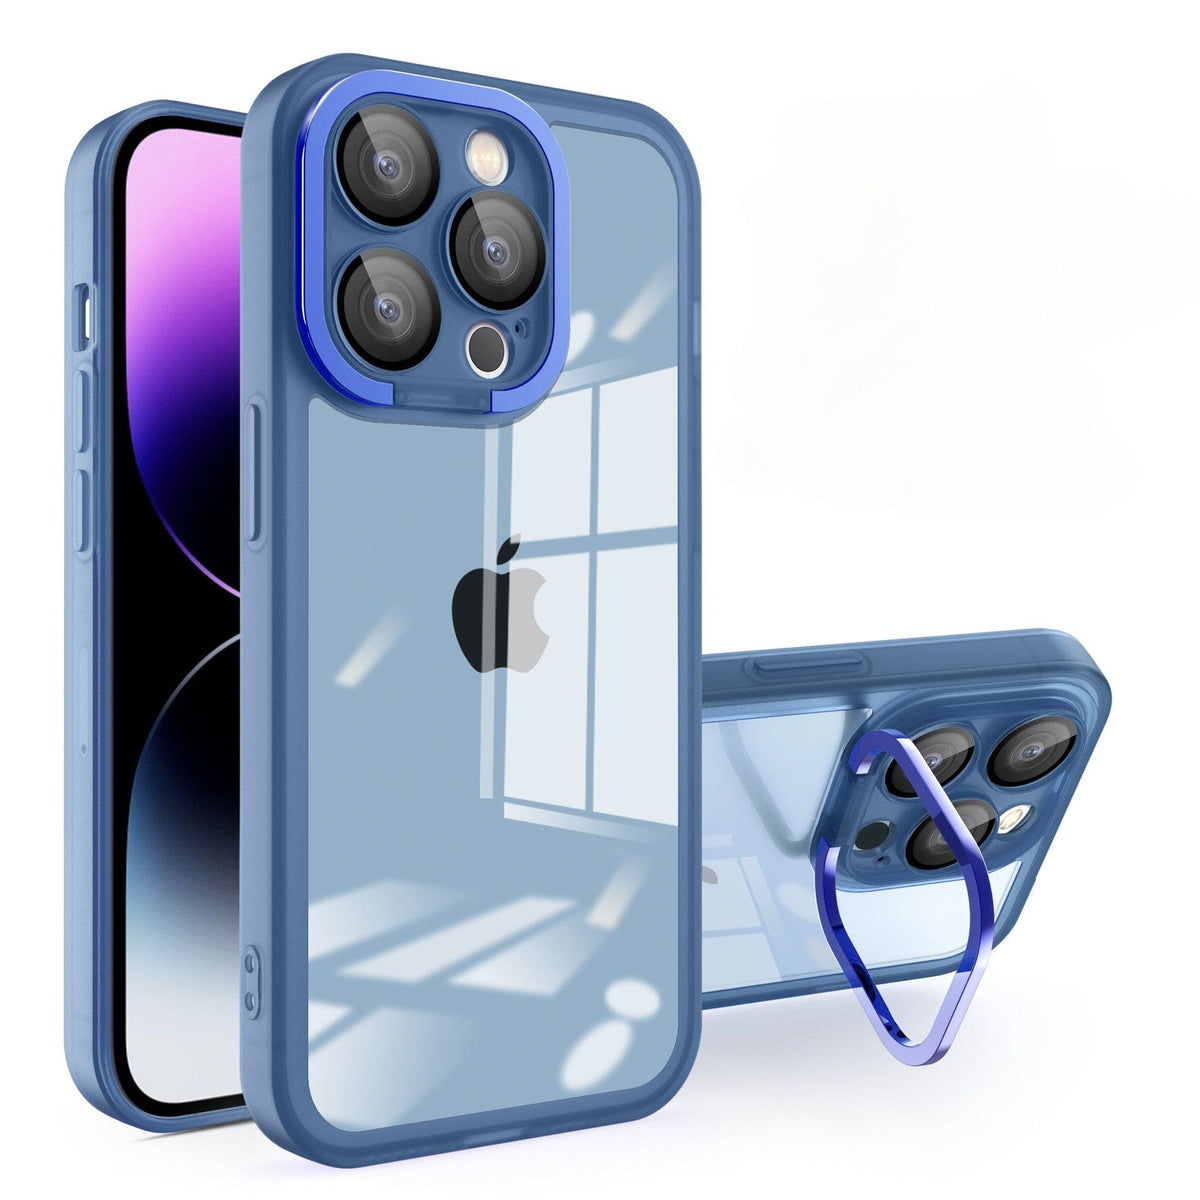 Husa protectie pentru Apple iPhone 12 Pro Max Electroplated cu suport pentru camera, 1.5 mm grosime, protectie camera, Albastru